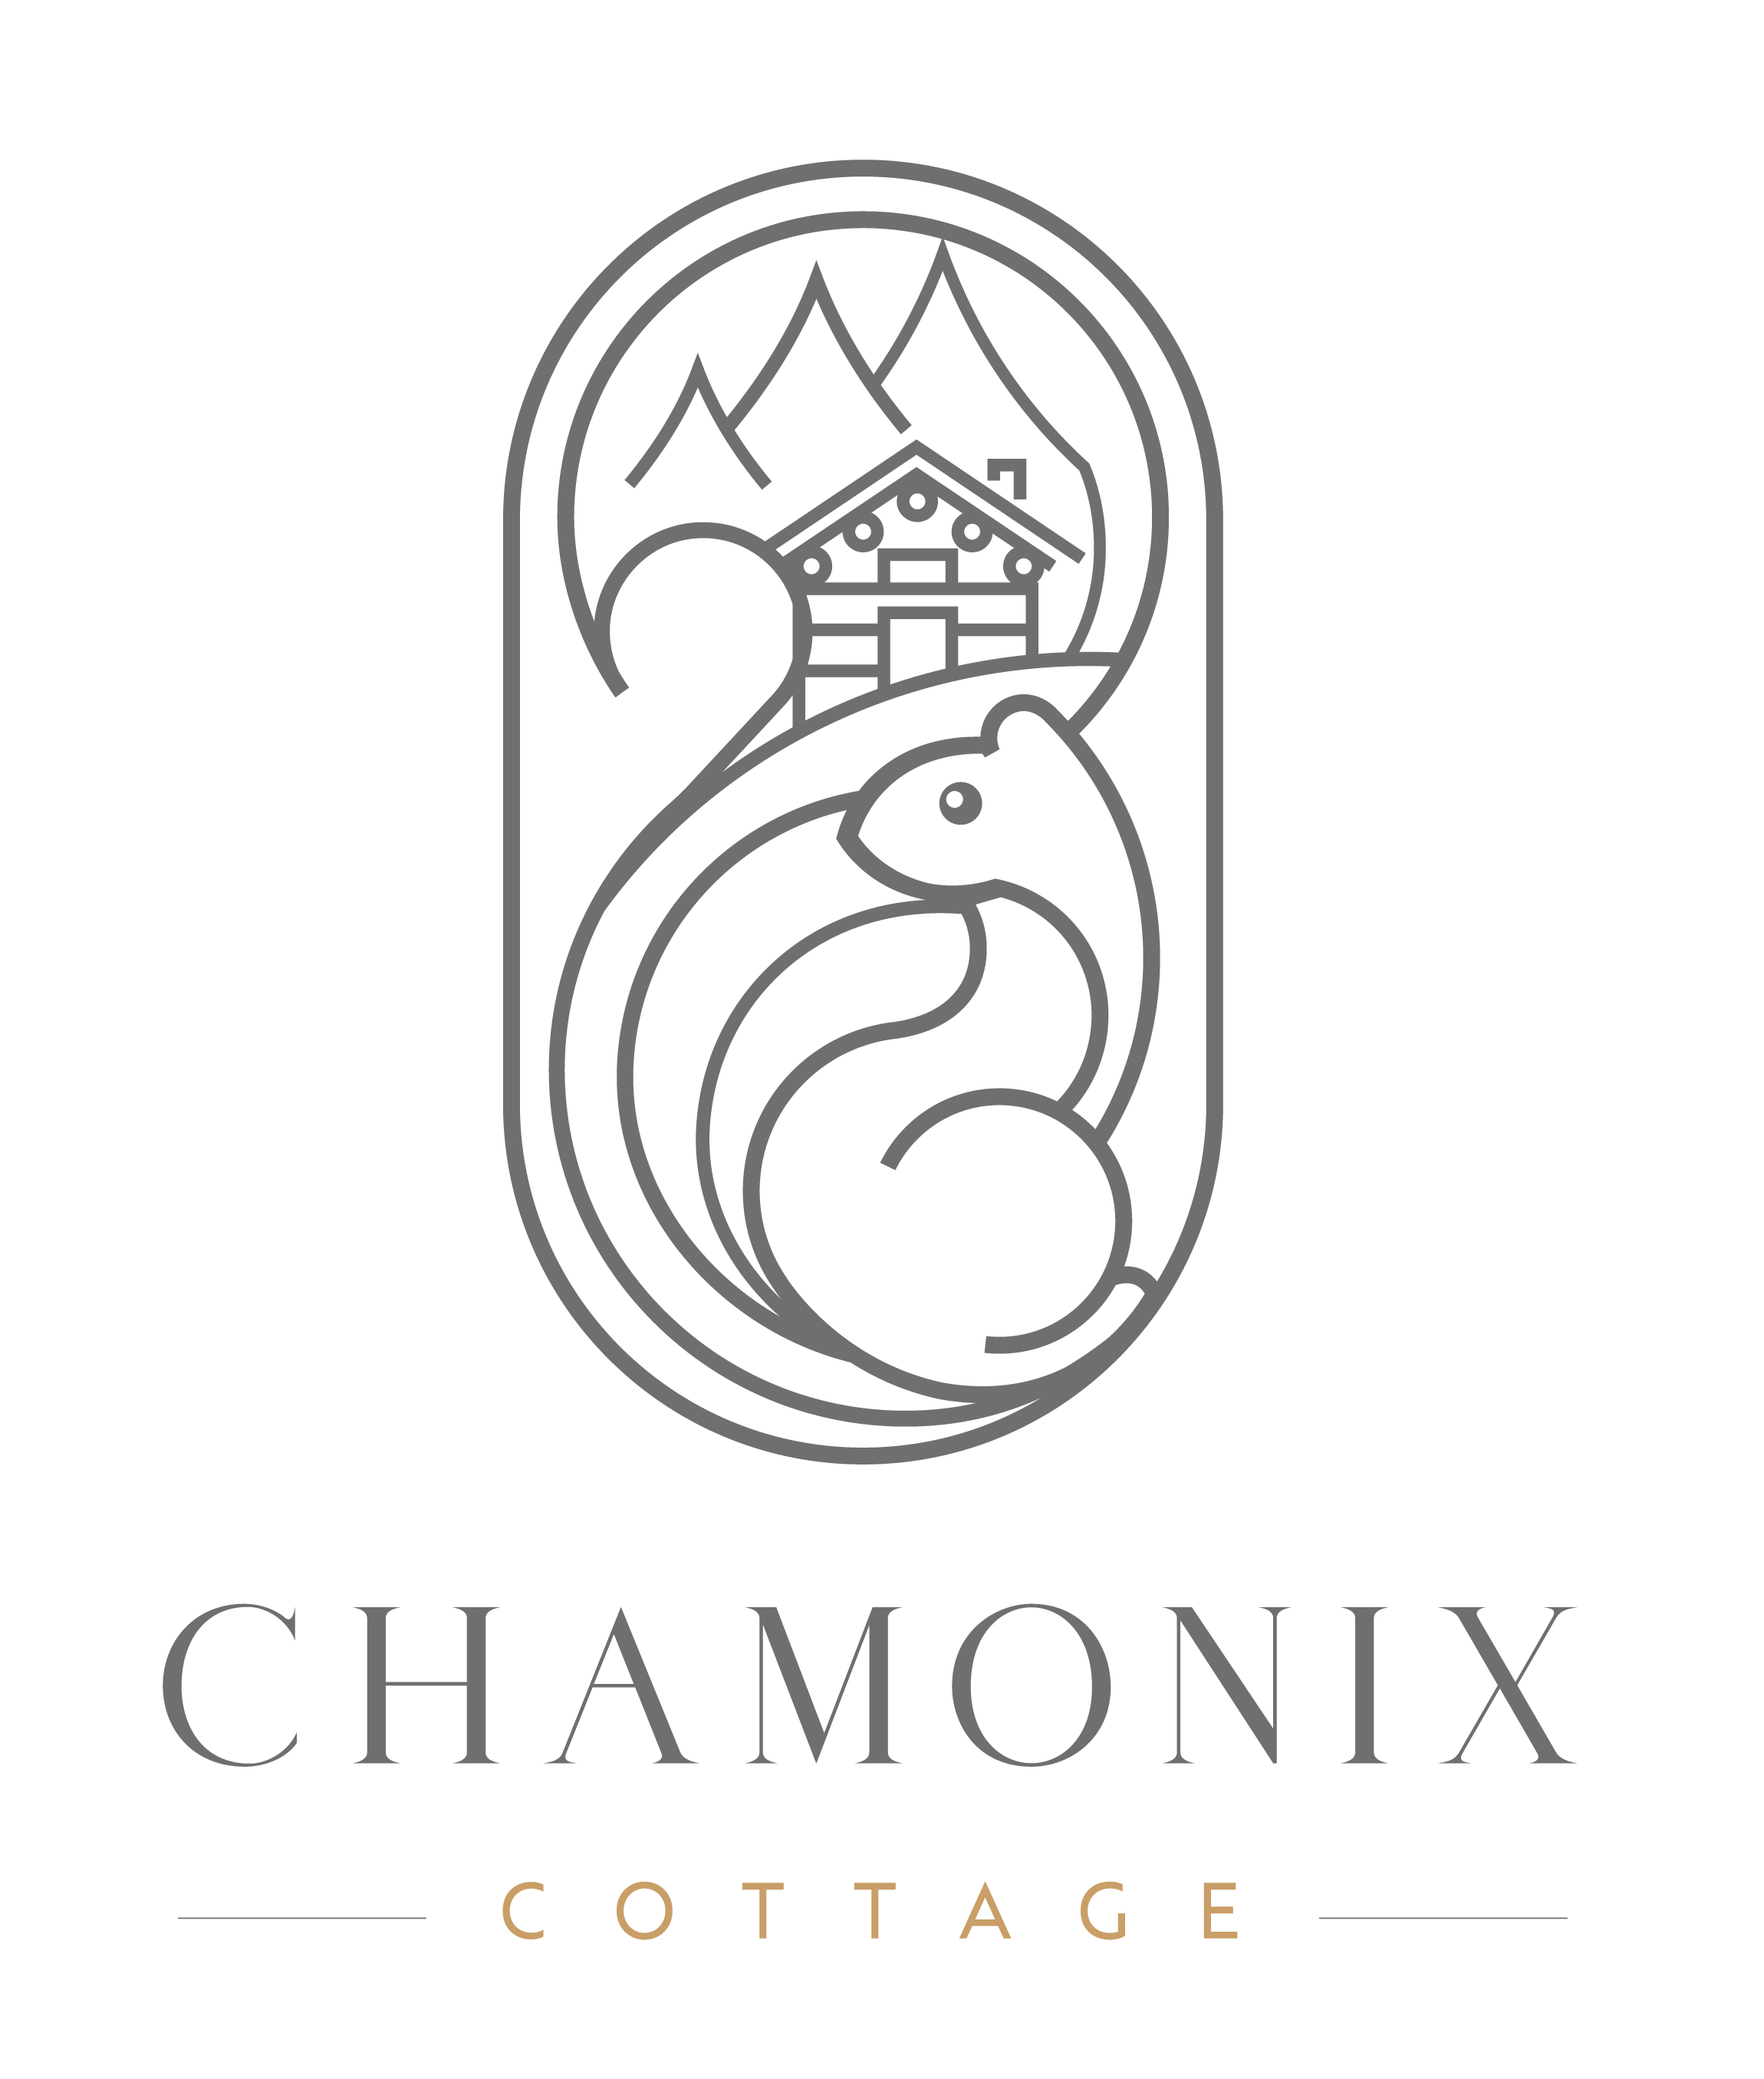 Chamonix Cottage | Chamonix Cottage - Chamonix Cottage